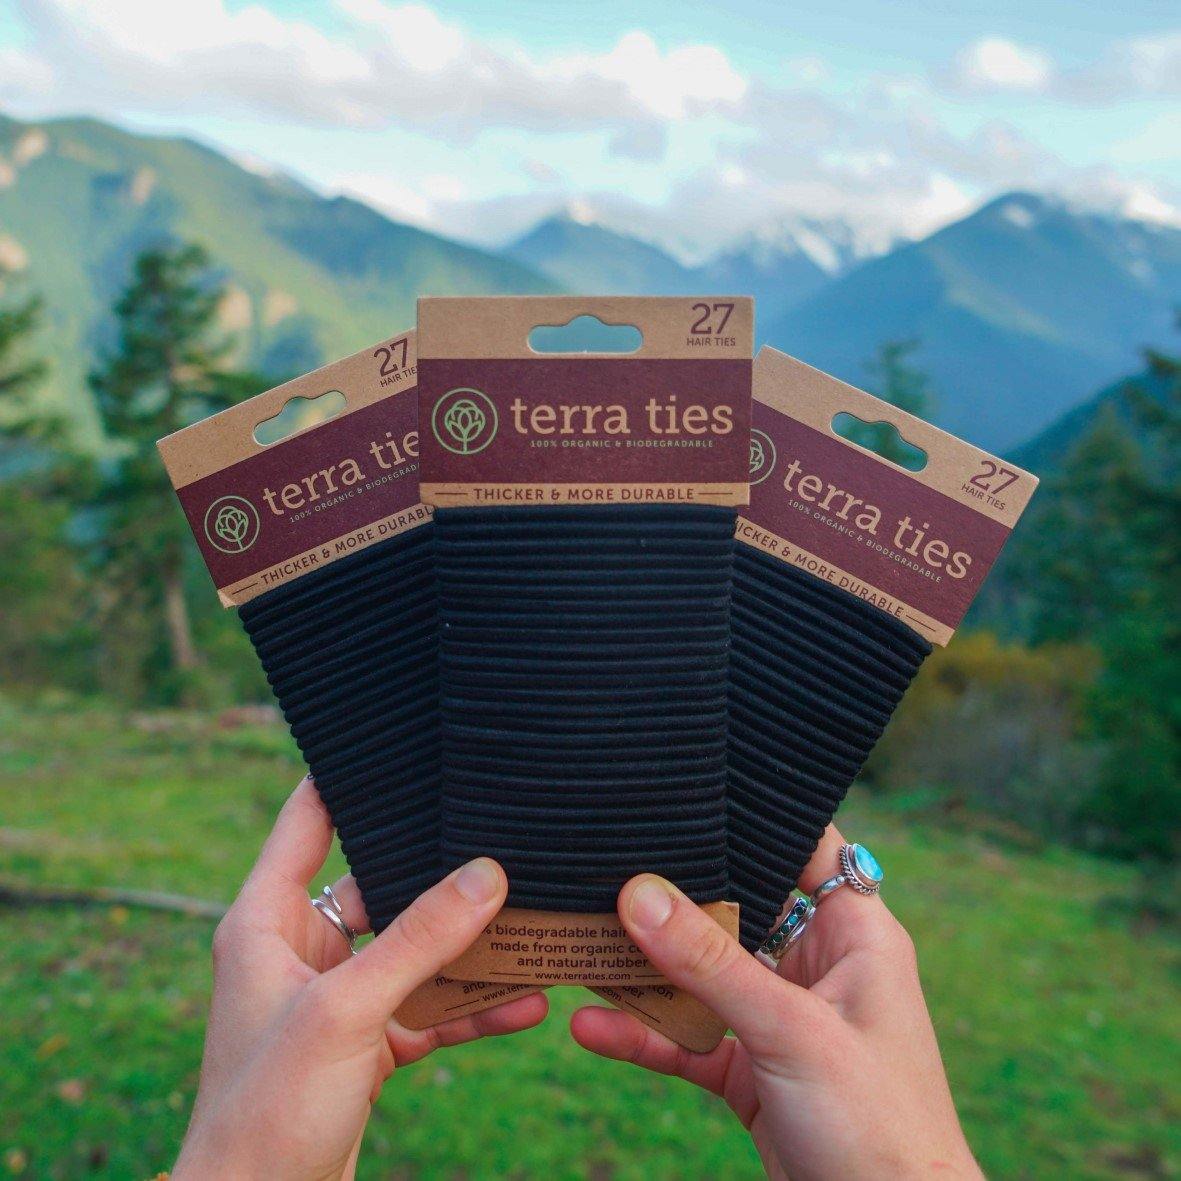 Terra Ties - Biodegradable Hair Ties 3 packs